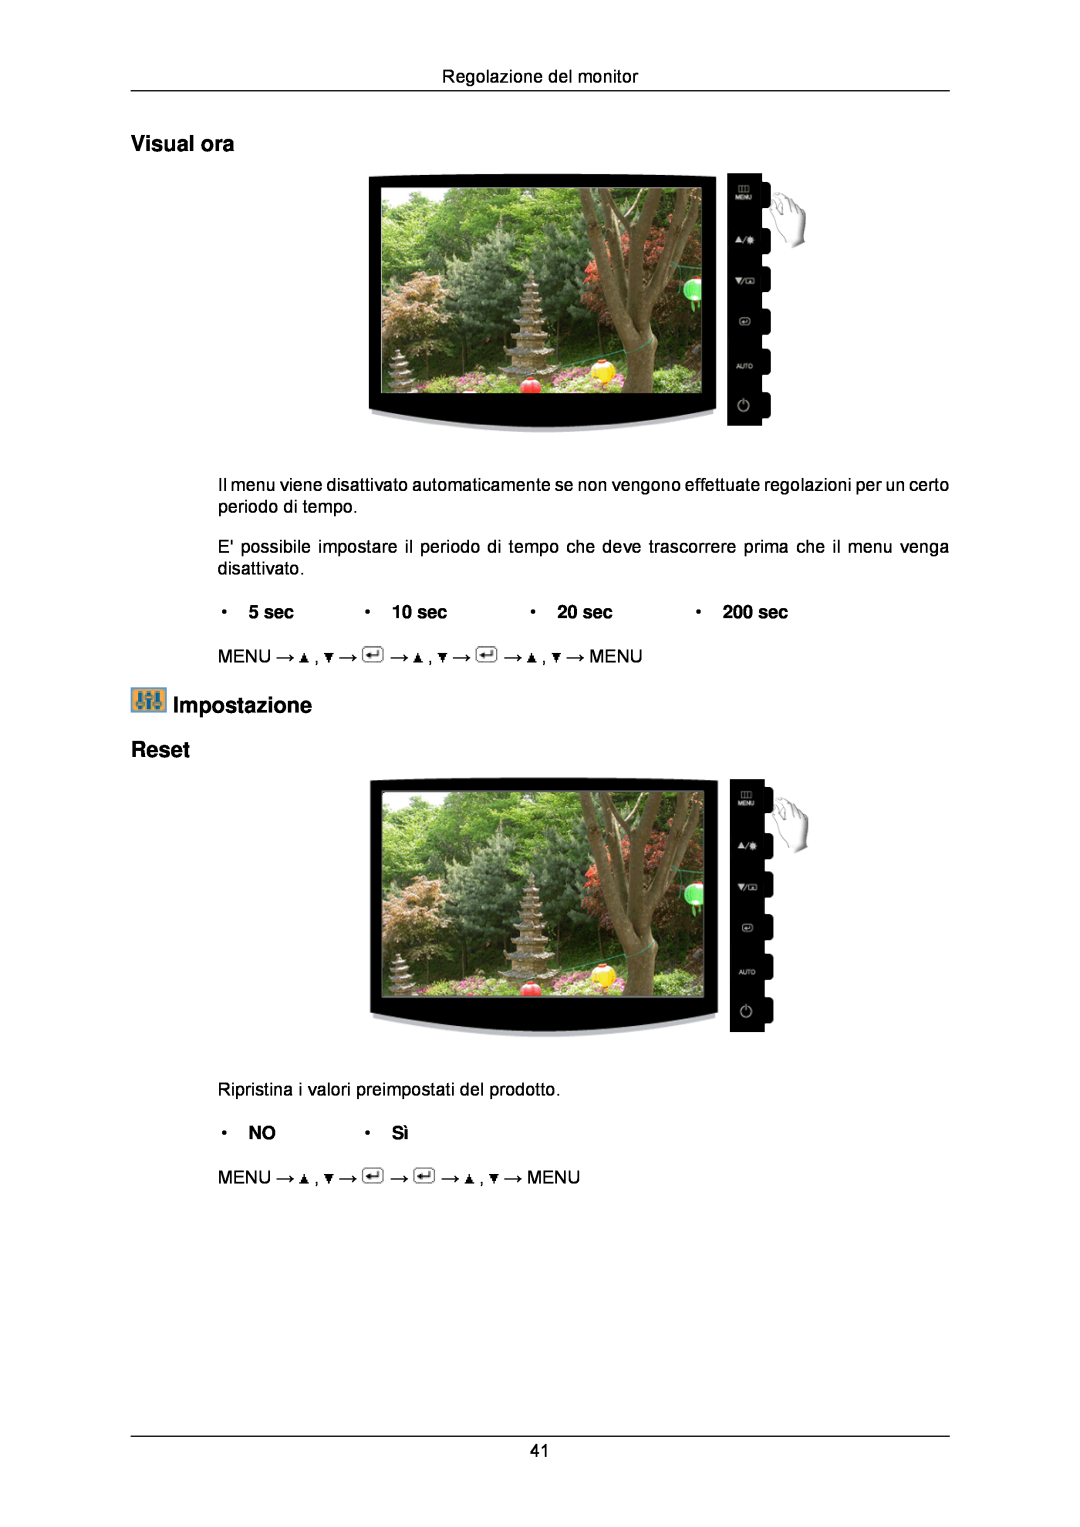 Samsung LS24CMKKFV/EN manual Visual ora, Impostazione Reset, 5 sec, 10 sec, 20 sec, 200 sec 